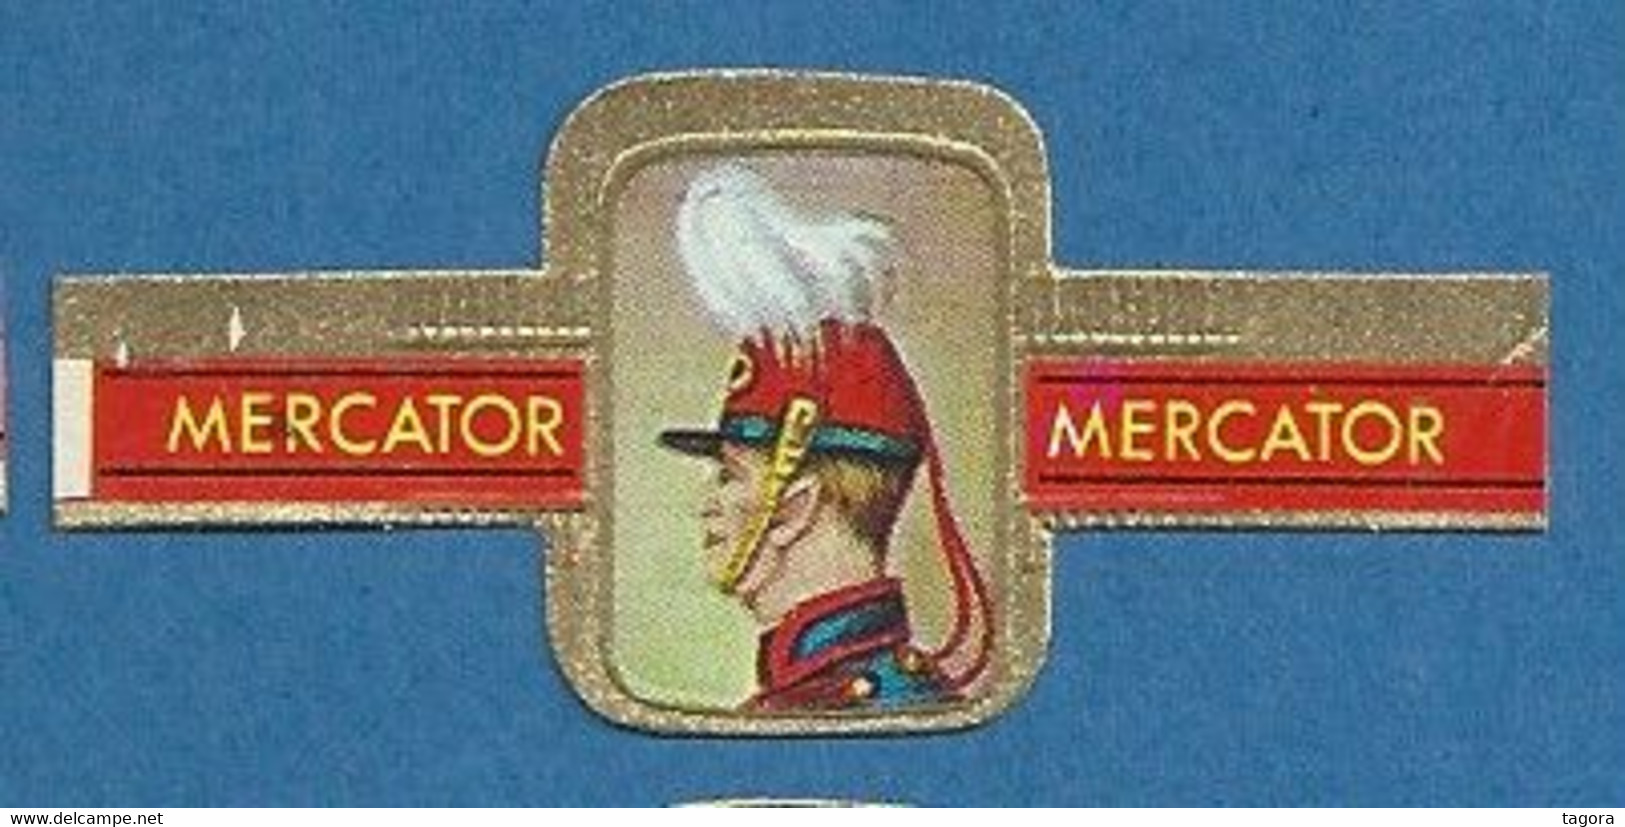 24 Bagues De Cigares Mercator, Série I Couvre-chefs Militaires, Thème Militaire Soldat Uniforme Coiffure - Cigar Bands